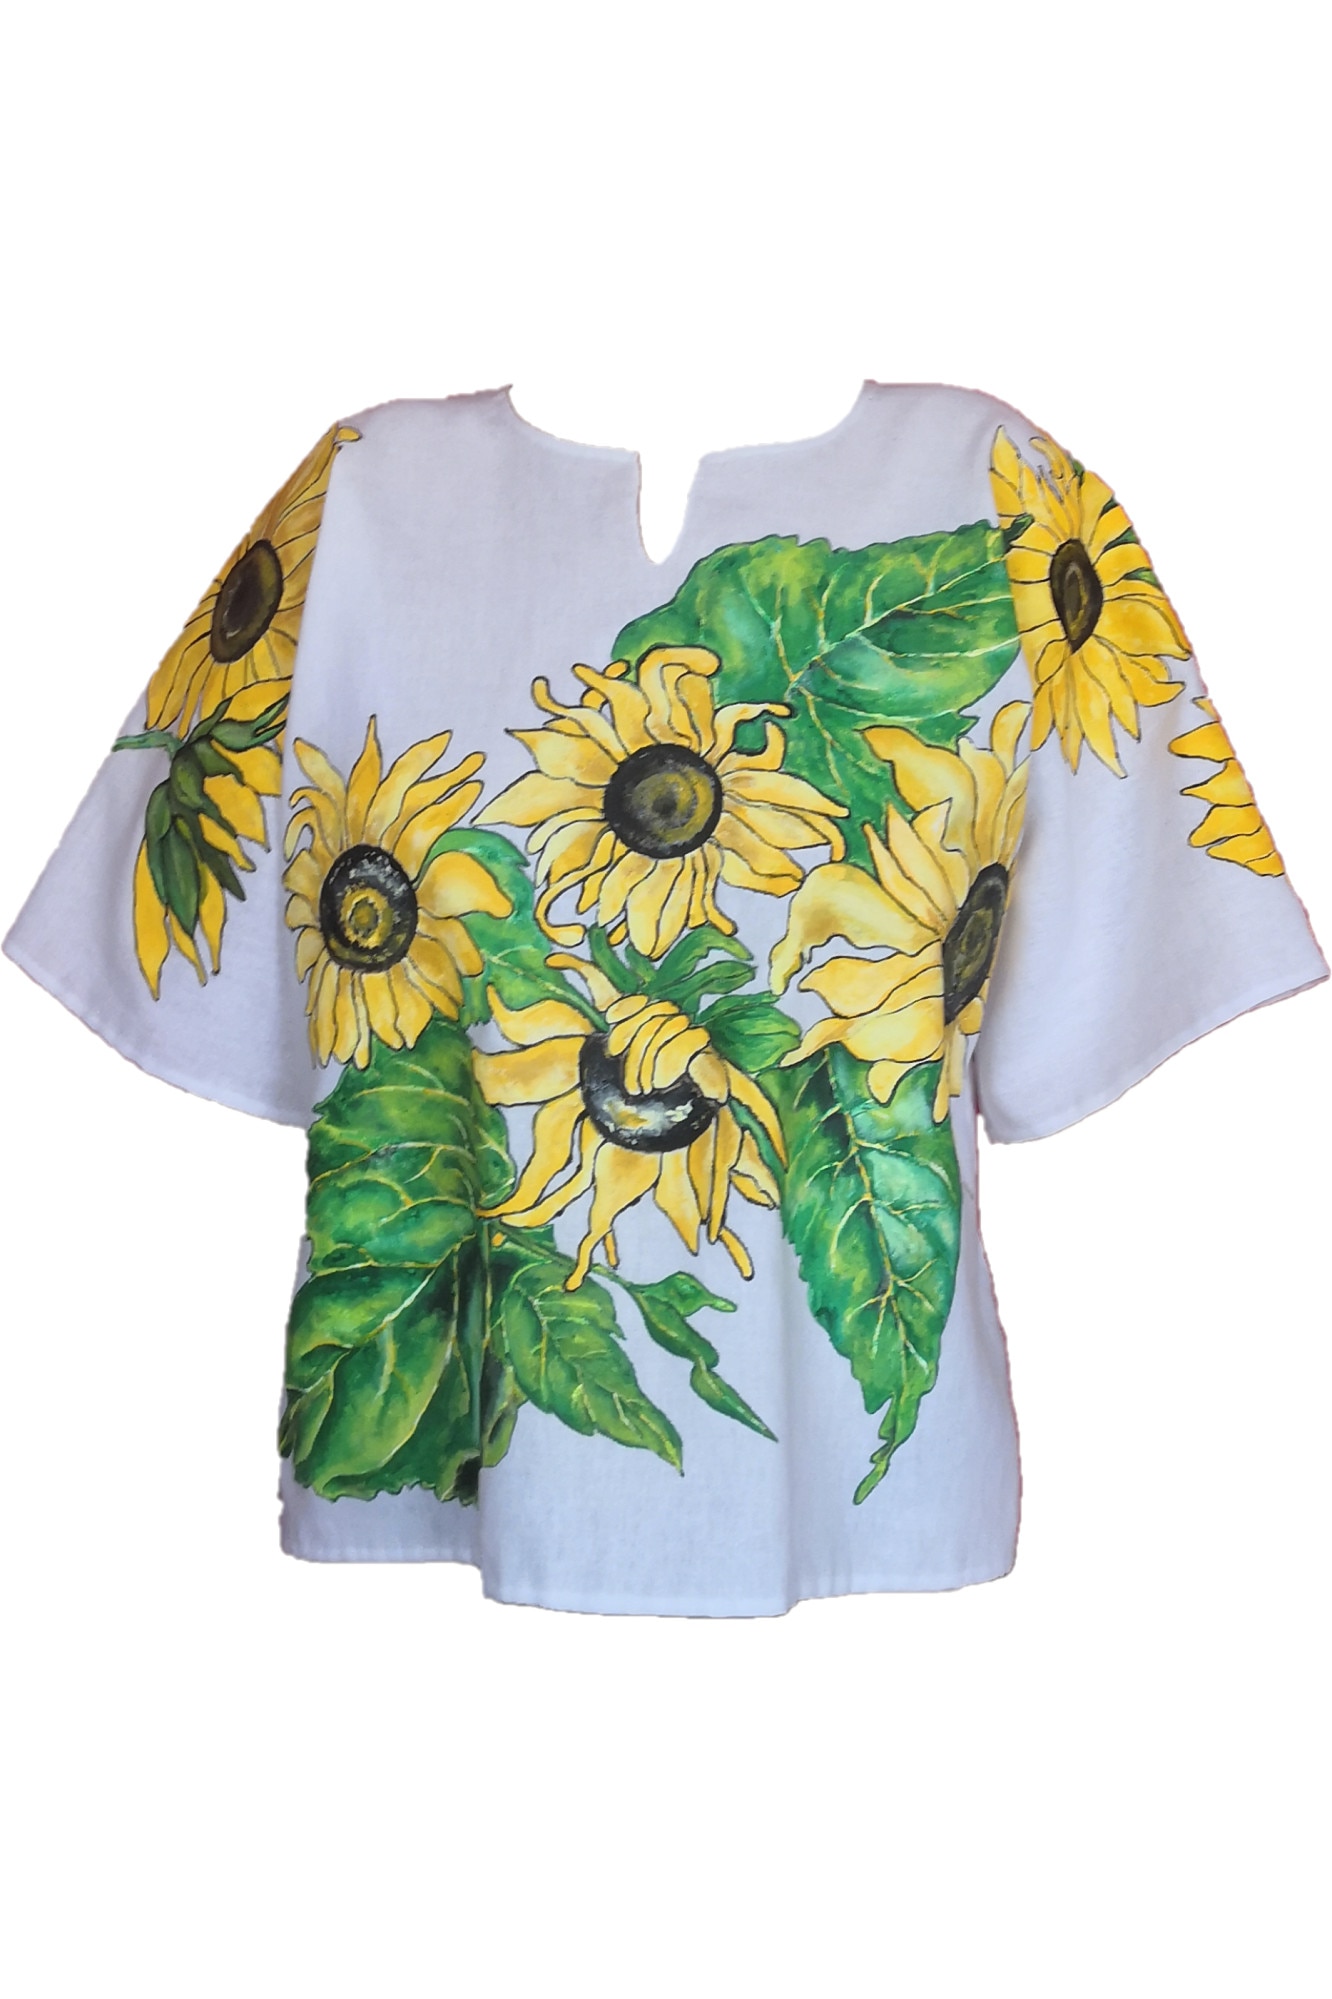 Bluza de dama tip ie, Flori Soare, pictata manual cu floarea soarelui pe panza din bumbac, produs unicat, marimea M-L - eMAG.ro